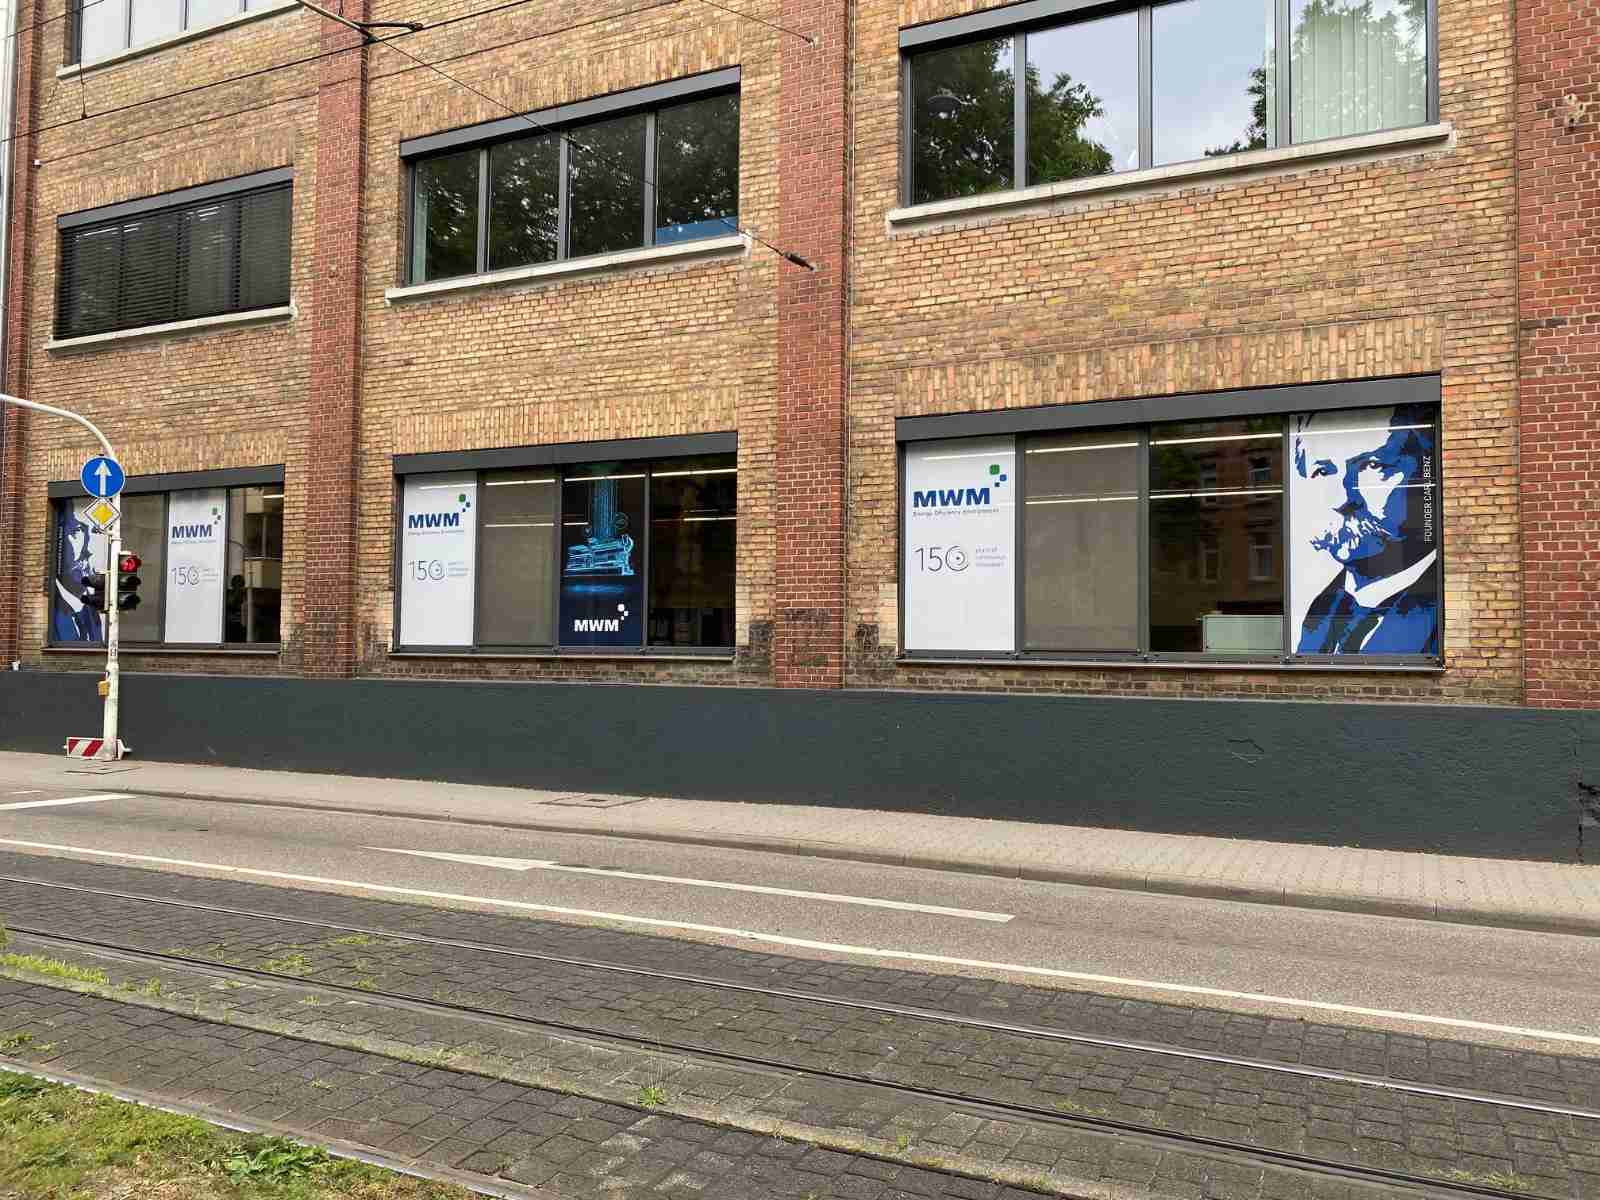 Окна, выходящие на Вальдхофштрассе и Карл-Бенц-Штрассе, с плакатами, изображающими основателя компании Карла Бенца и газовый двигатель TCG 3016 MWM